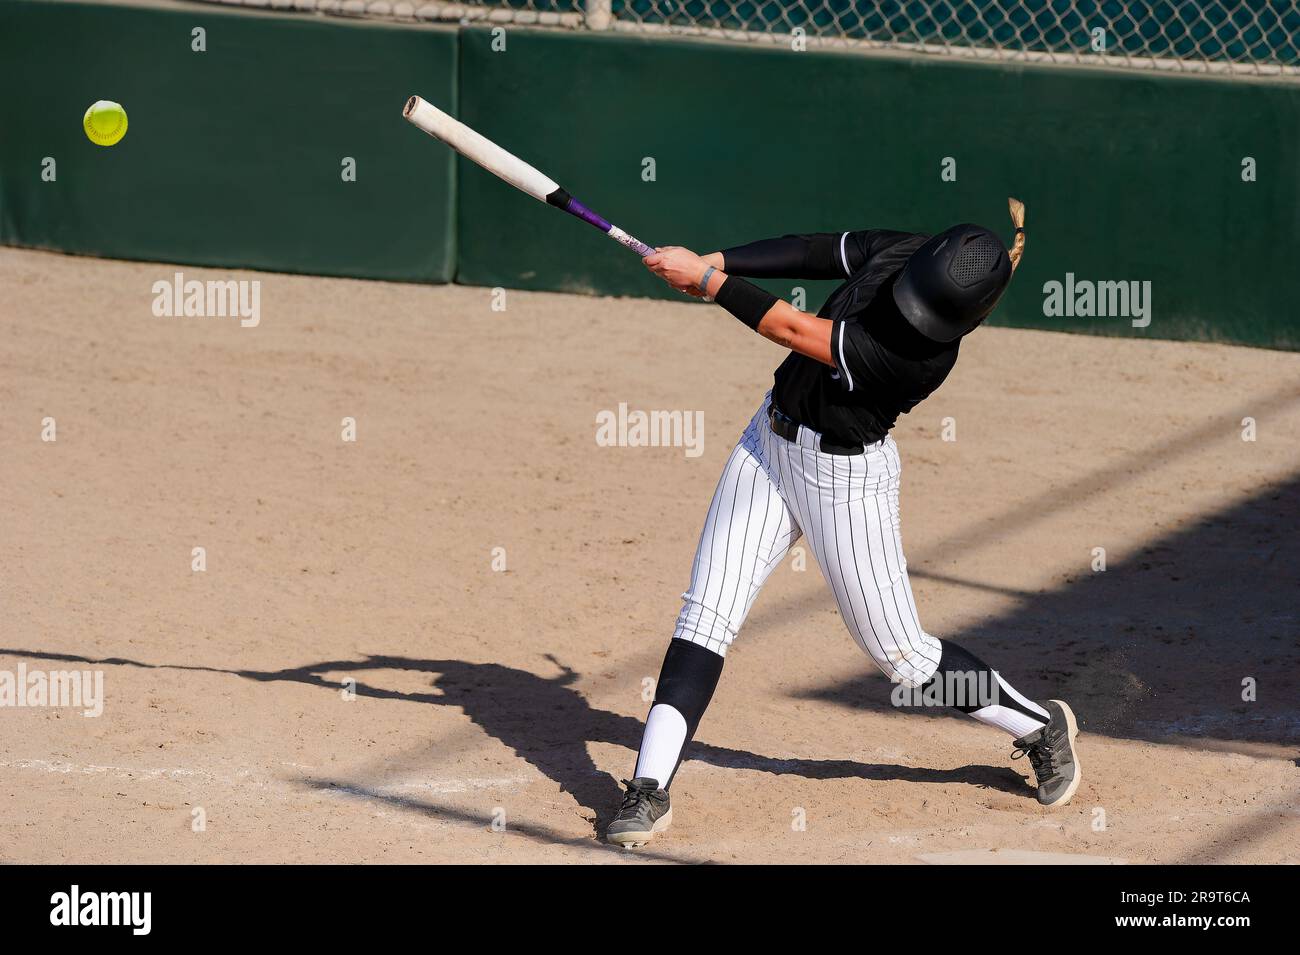 Ein Baseball-Softball-Spieler schlägt den Schläger und schlägt den Ball Stockfoto